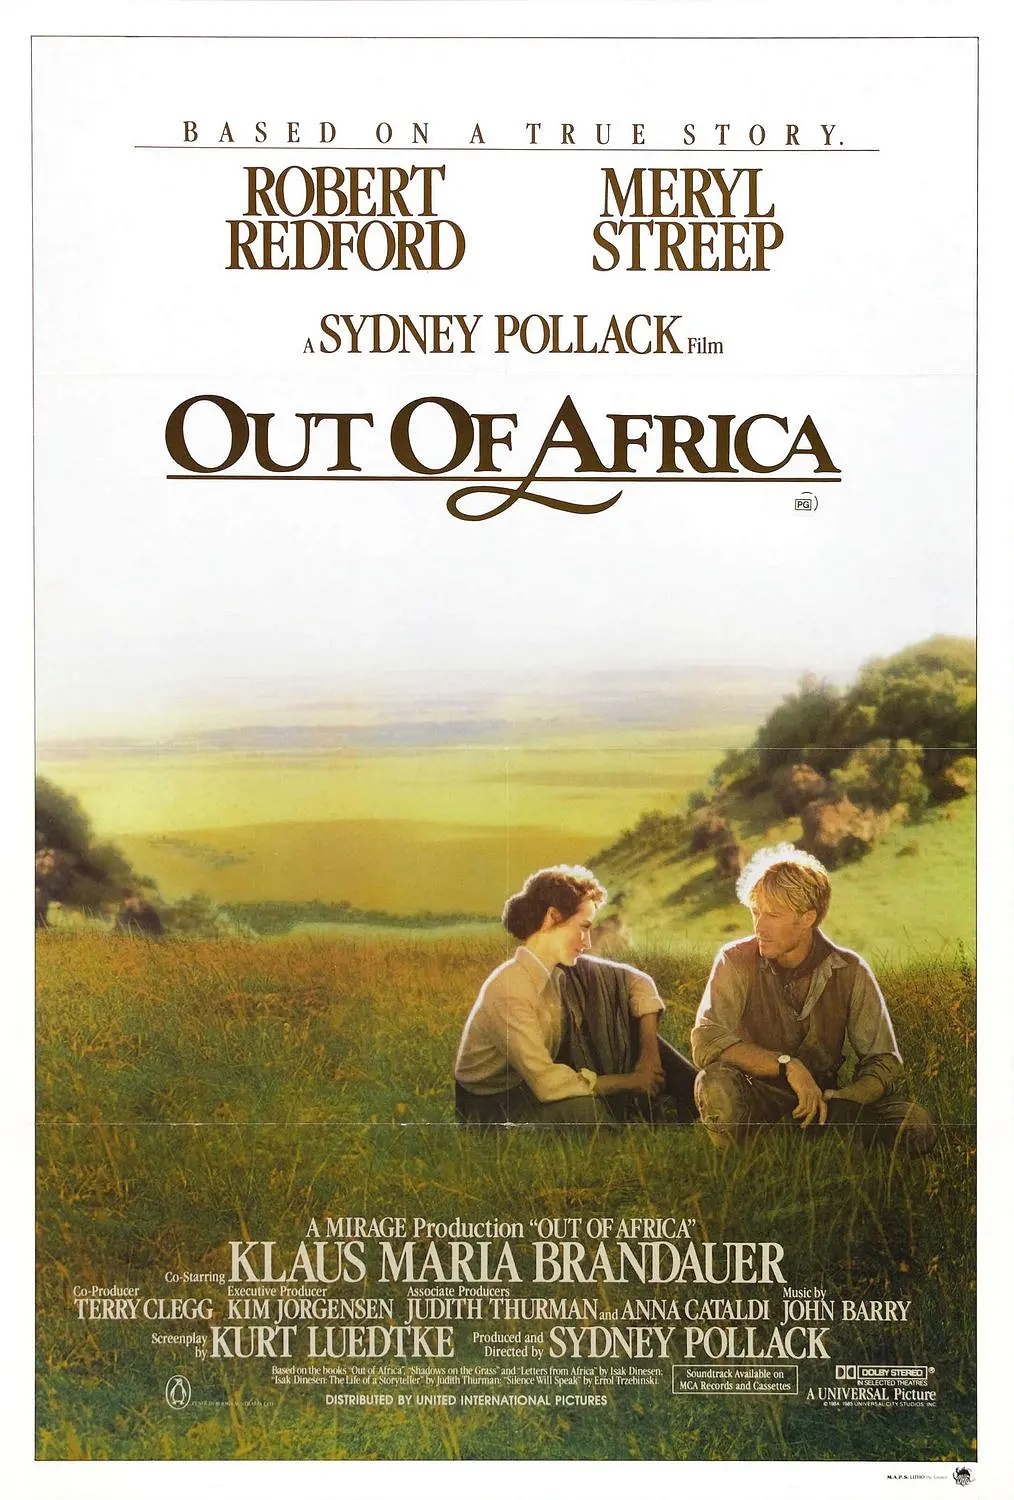 《走出非洲》：从三个阶段解读凯伦曲折的心路历程及现实思考